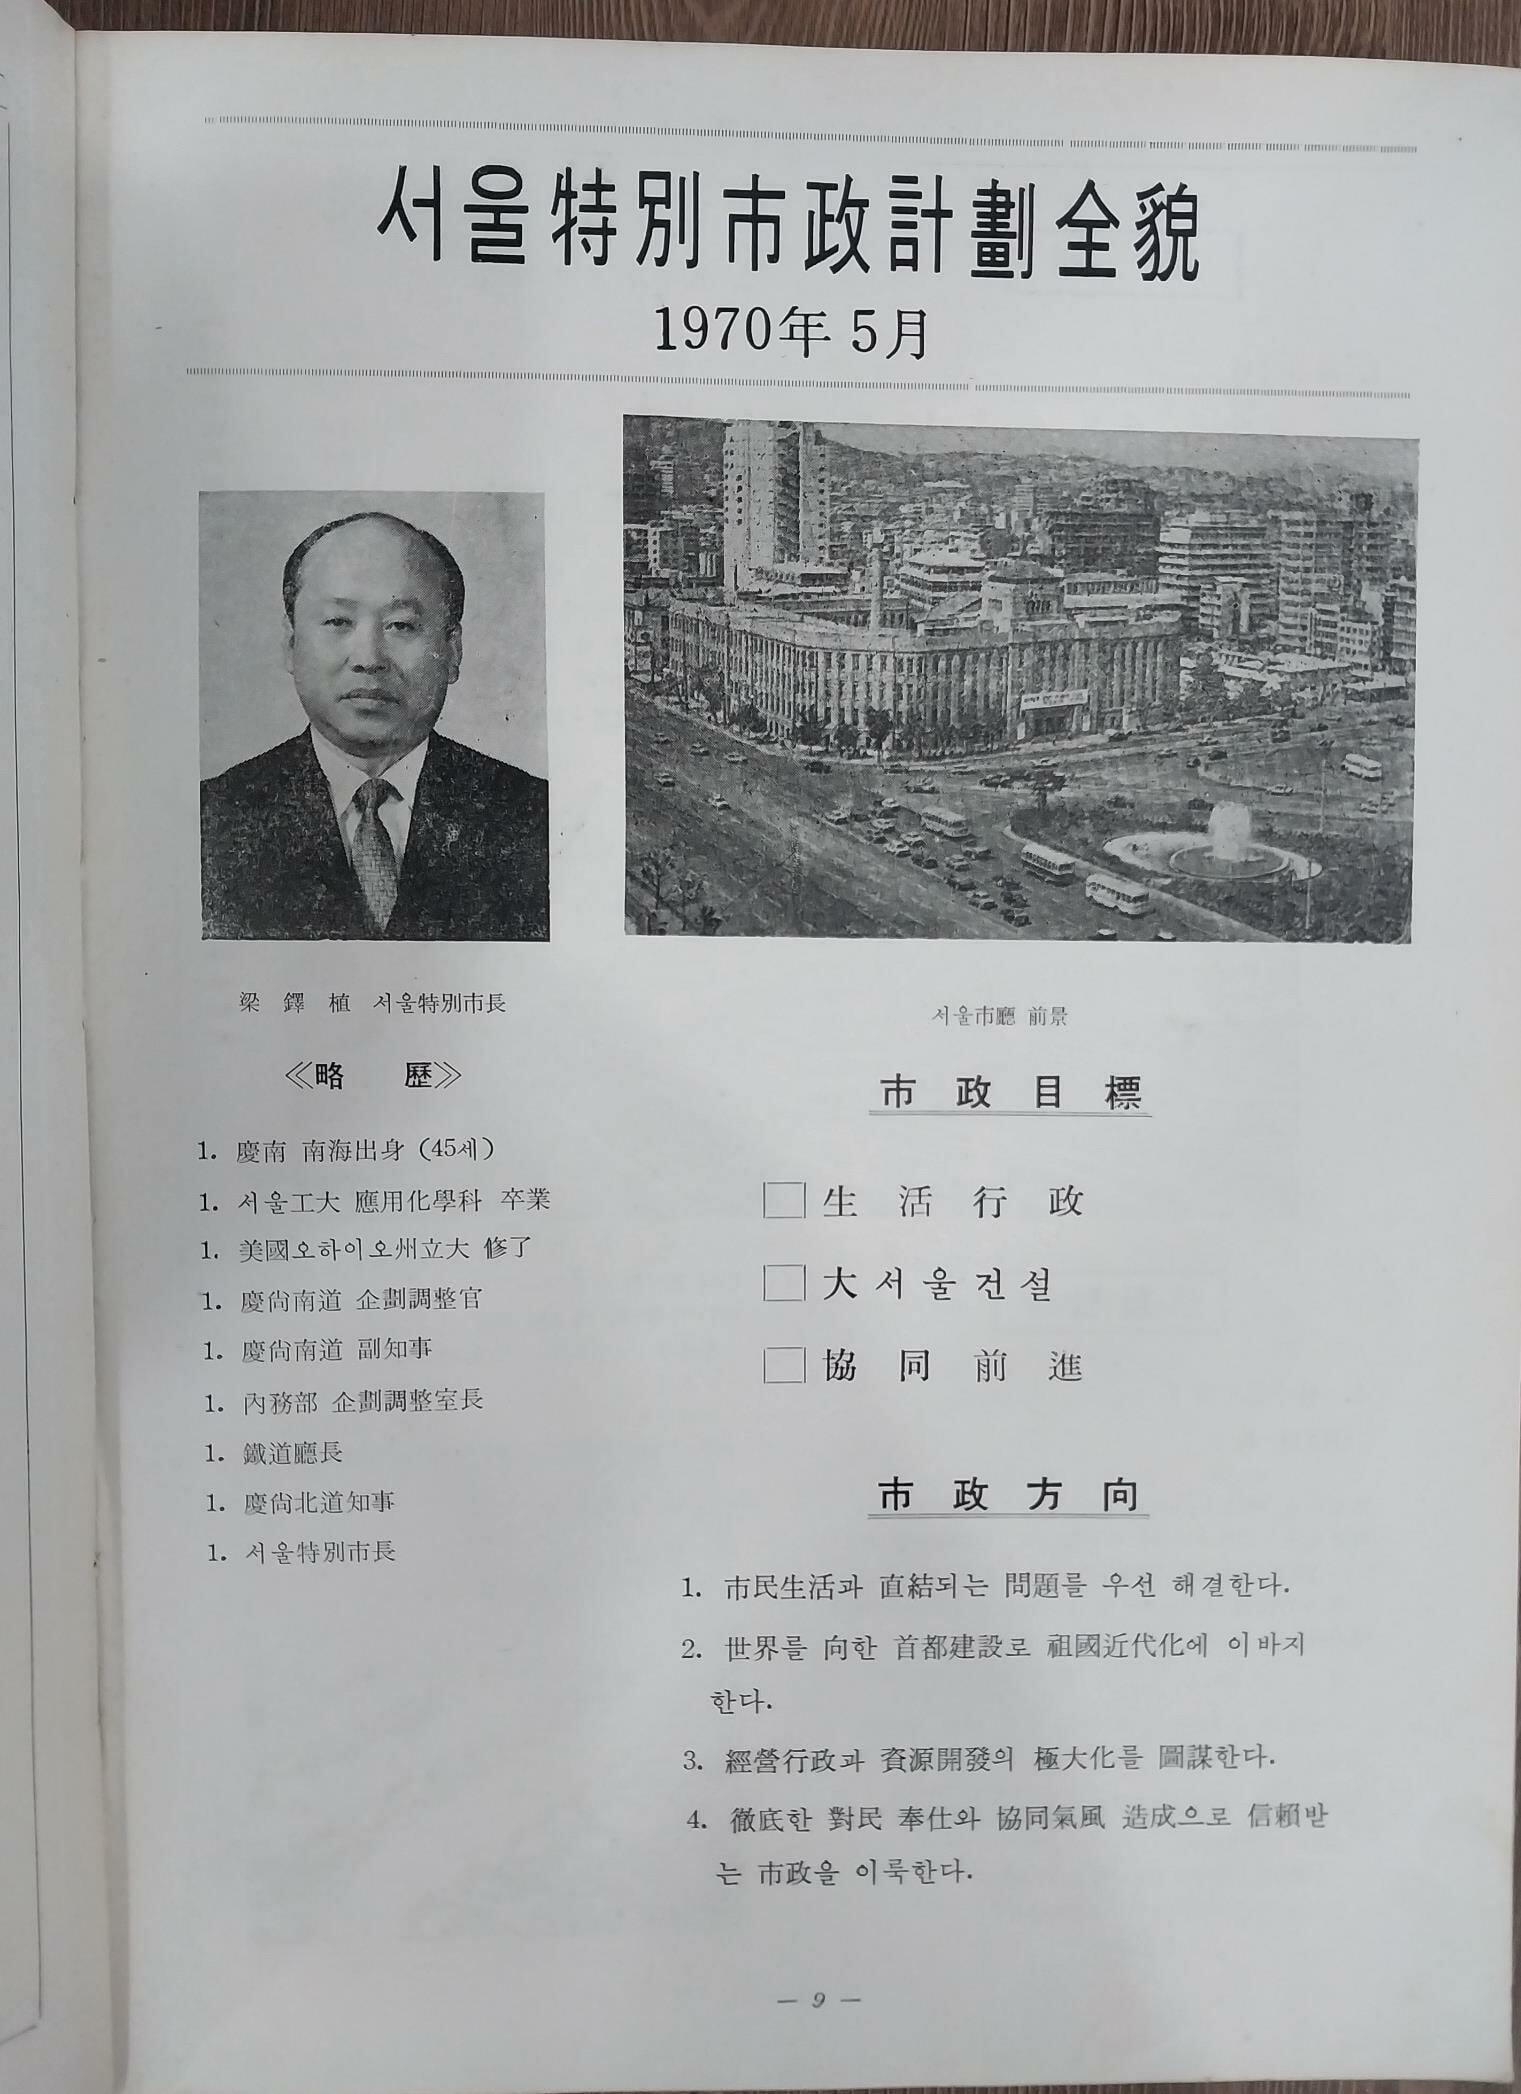 大서울百科大觀 大 [서울] 百科大觀 - 대서울백과대관 | 1970년 6월